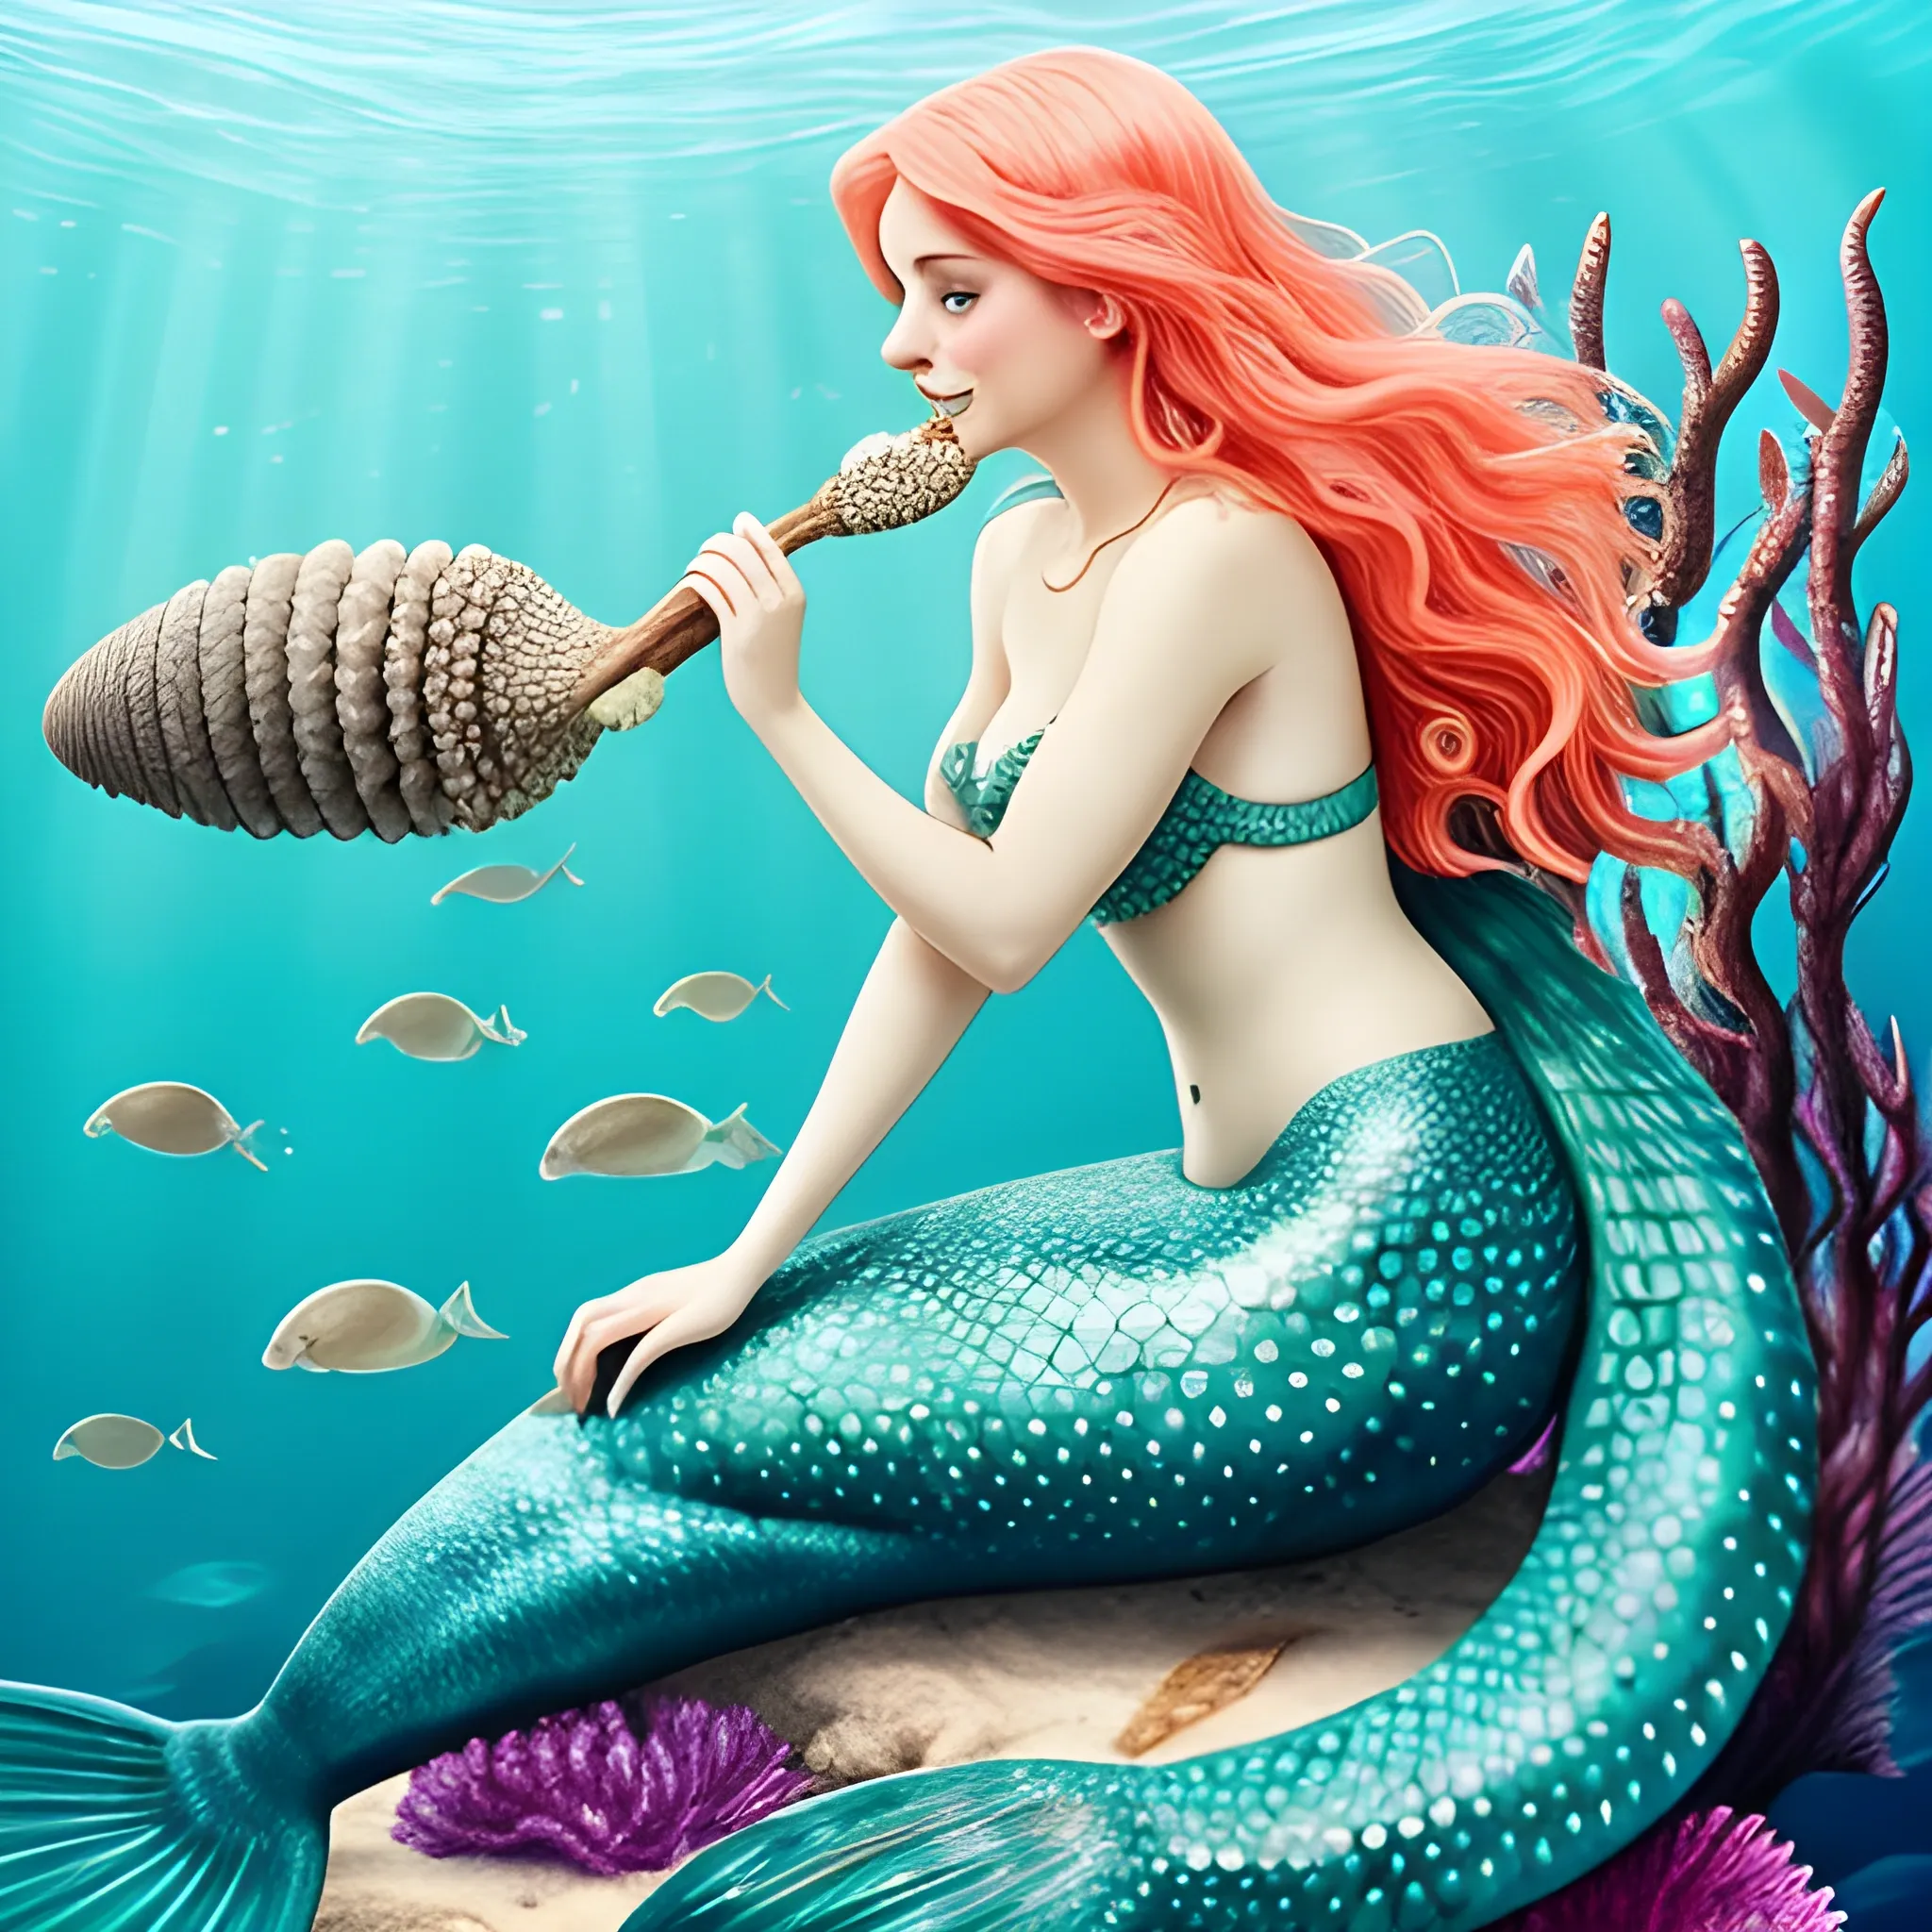 Beautiful mermaid eating sea cucumber